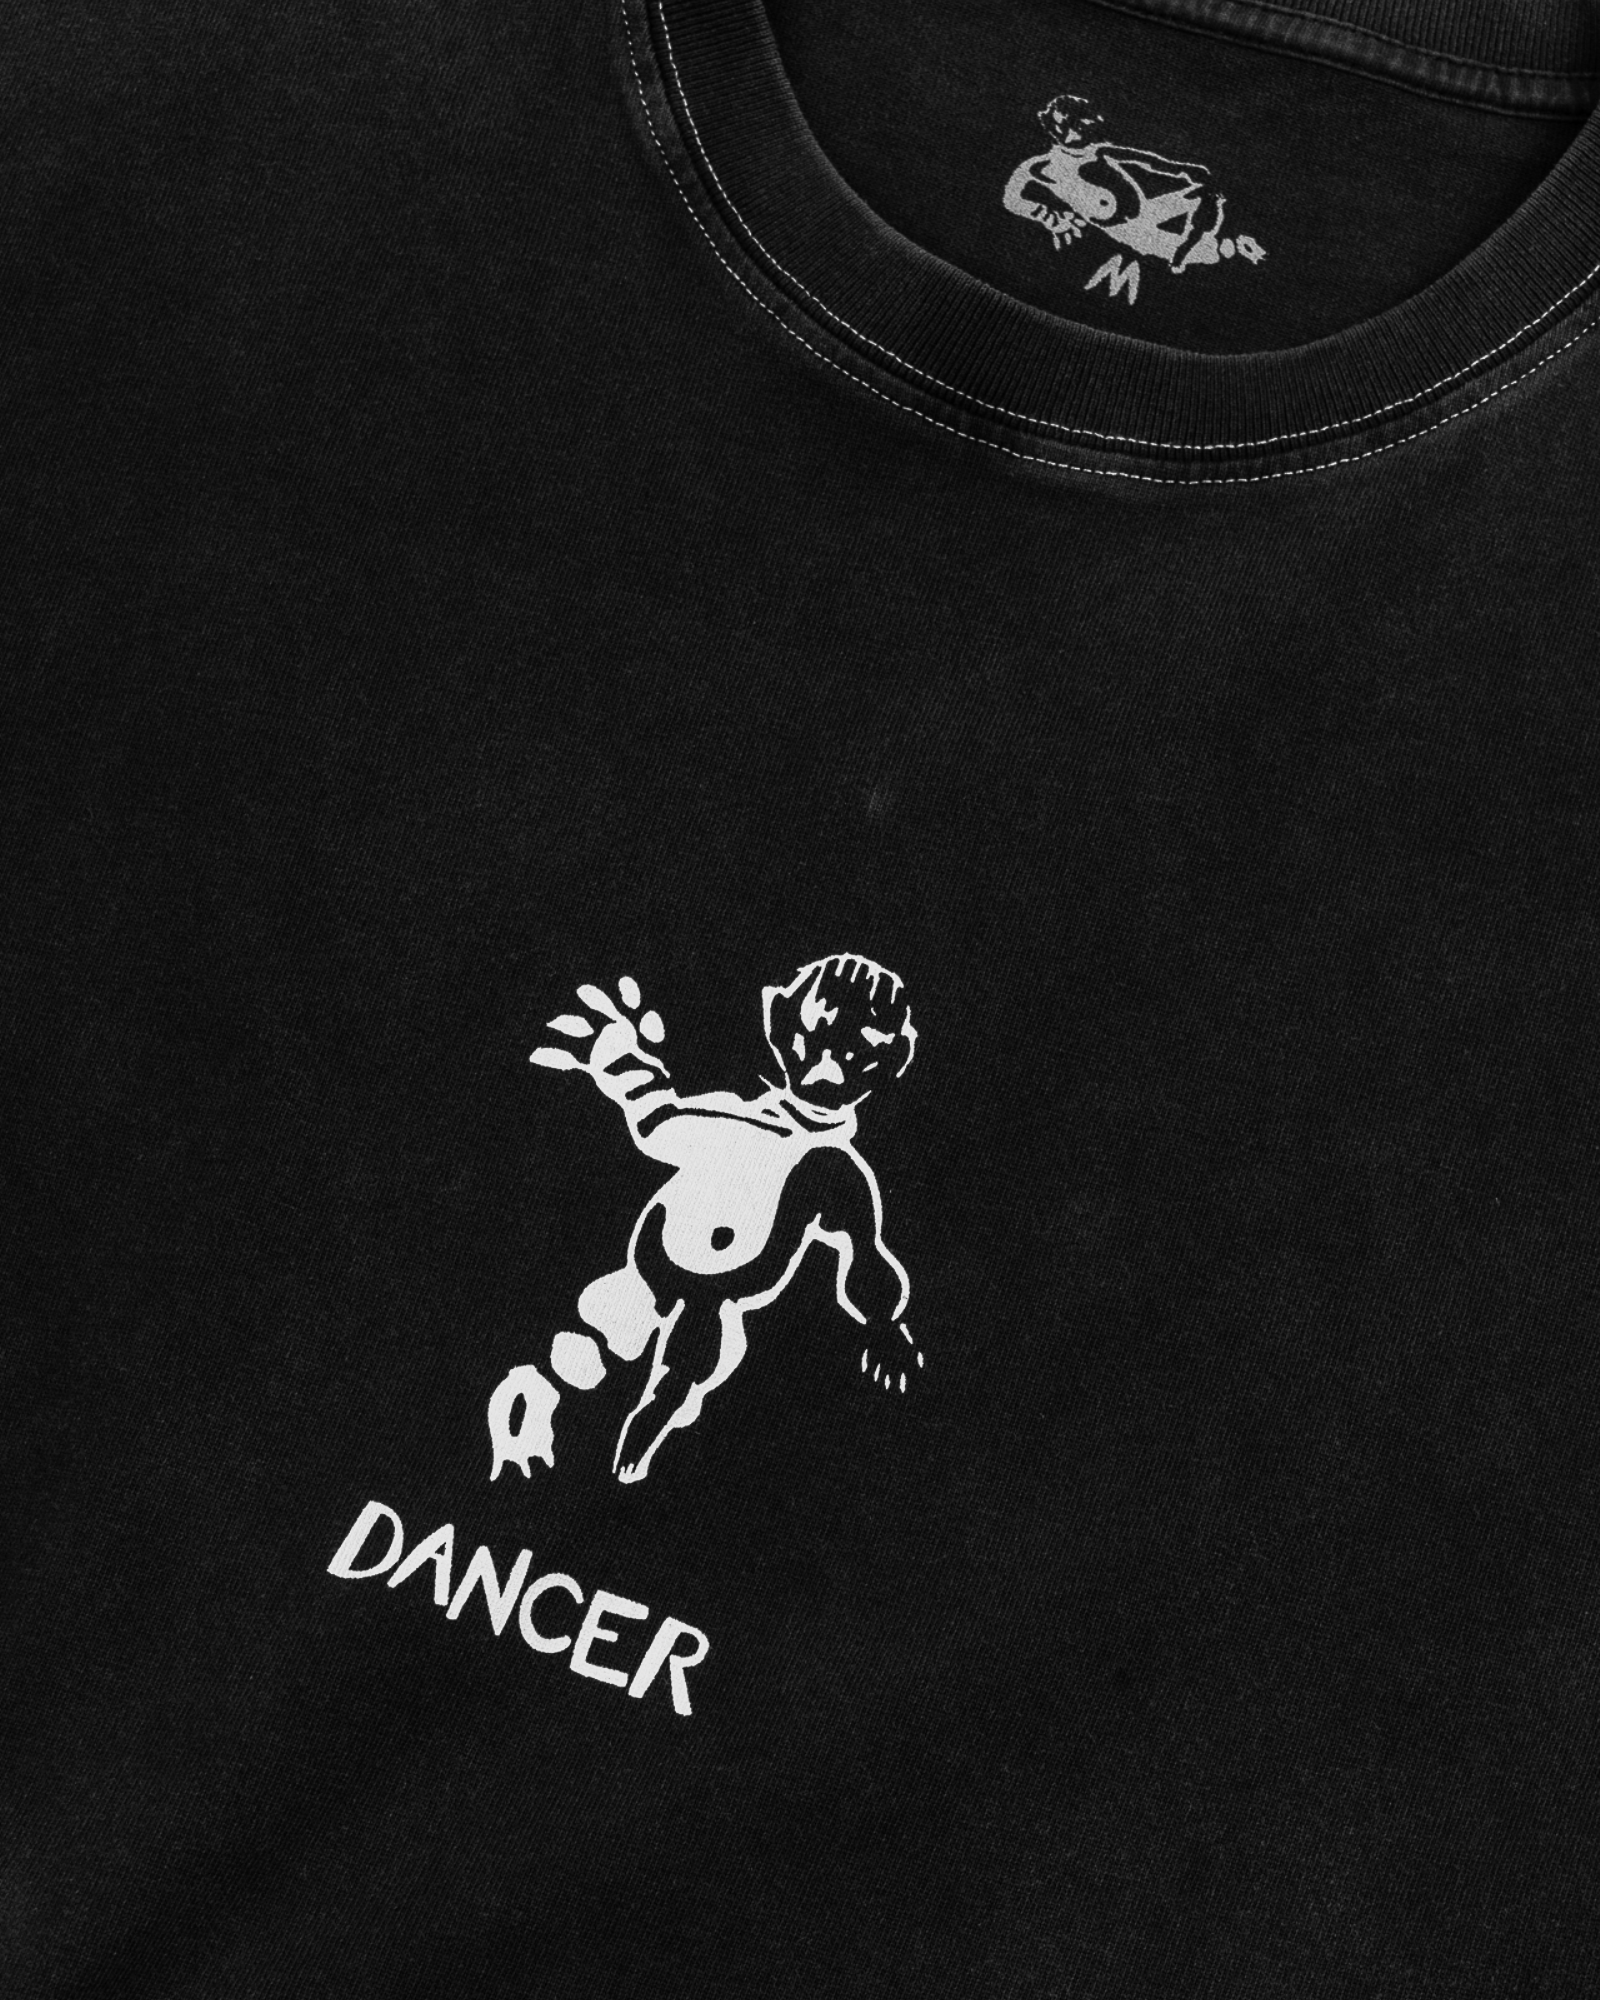 Dancer - Tee - OG Logo Contrast Stitch - Tee - Washed Black